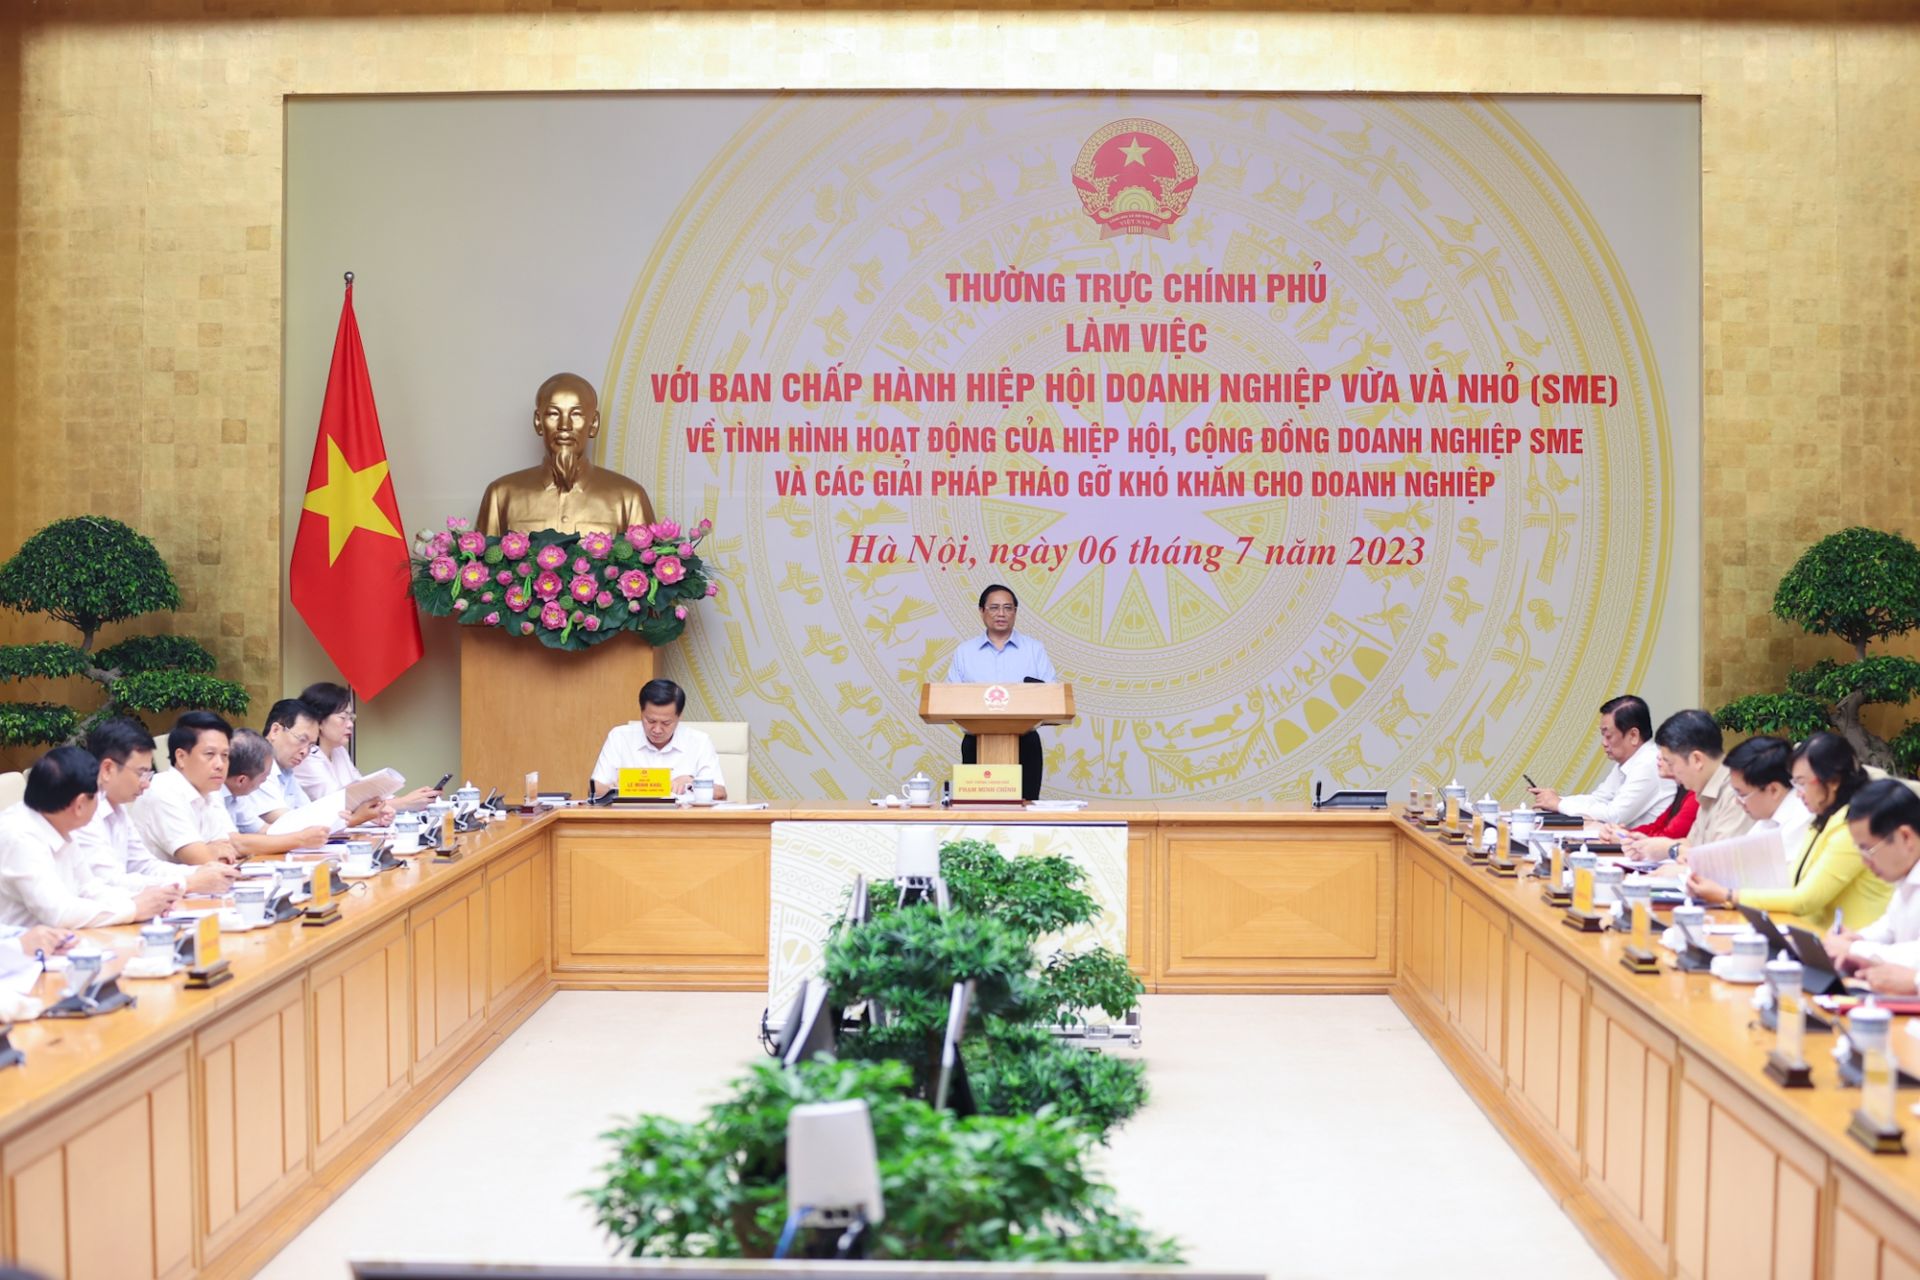 Thủ tướng Phạm Minh Chính chủ trì cuộc làm việc của Thường trực Chính phủ với Ban Chấp hành Hiệp hội VINASME Việt Nam.